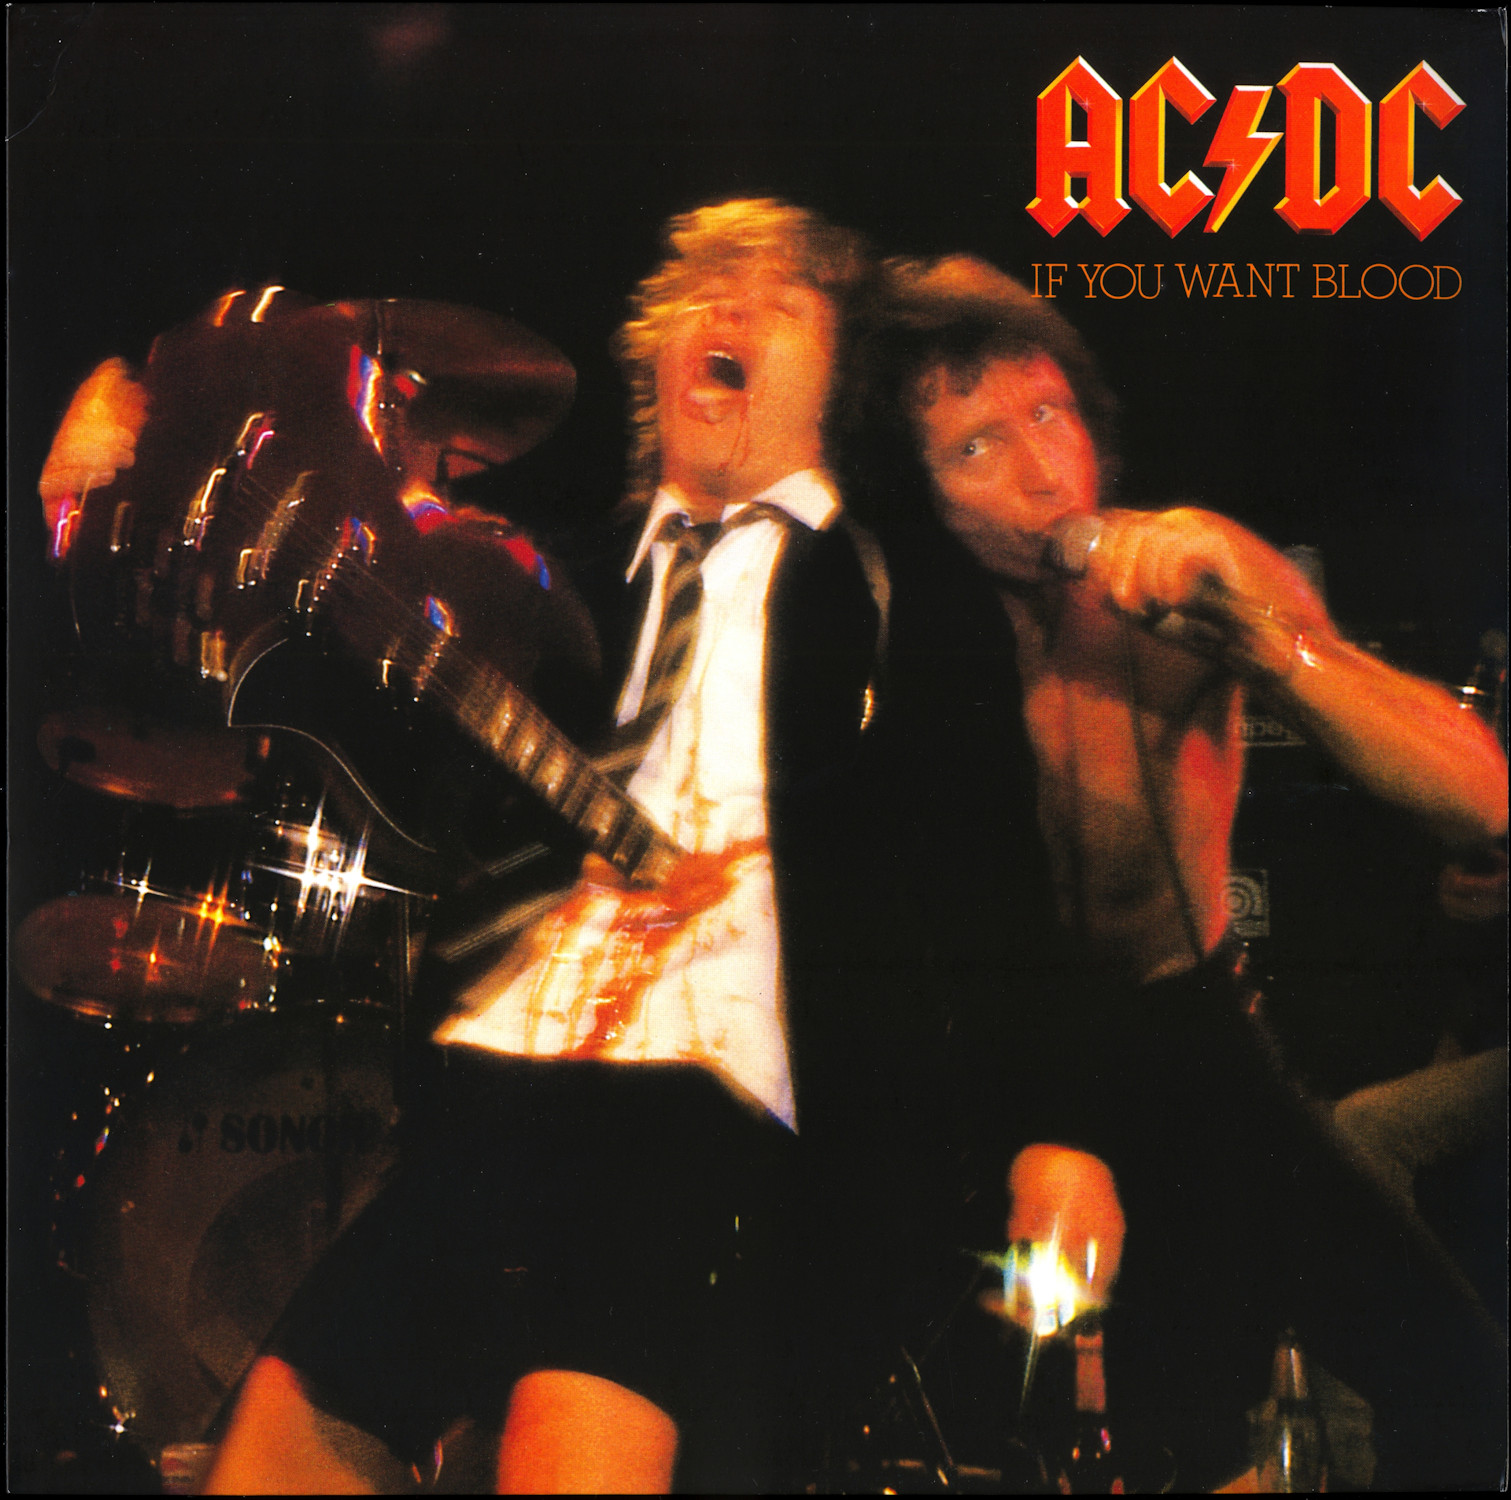 AC/DC - Back In Black (Live at Donington, 8/17/91) 